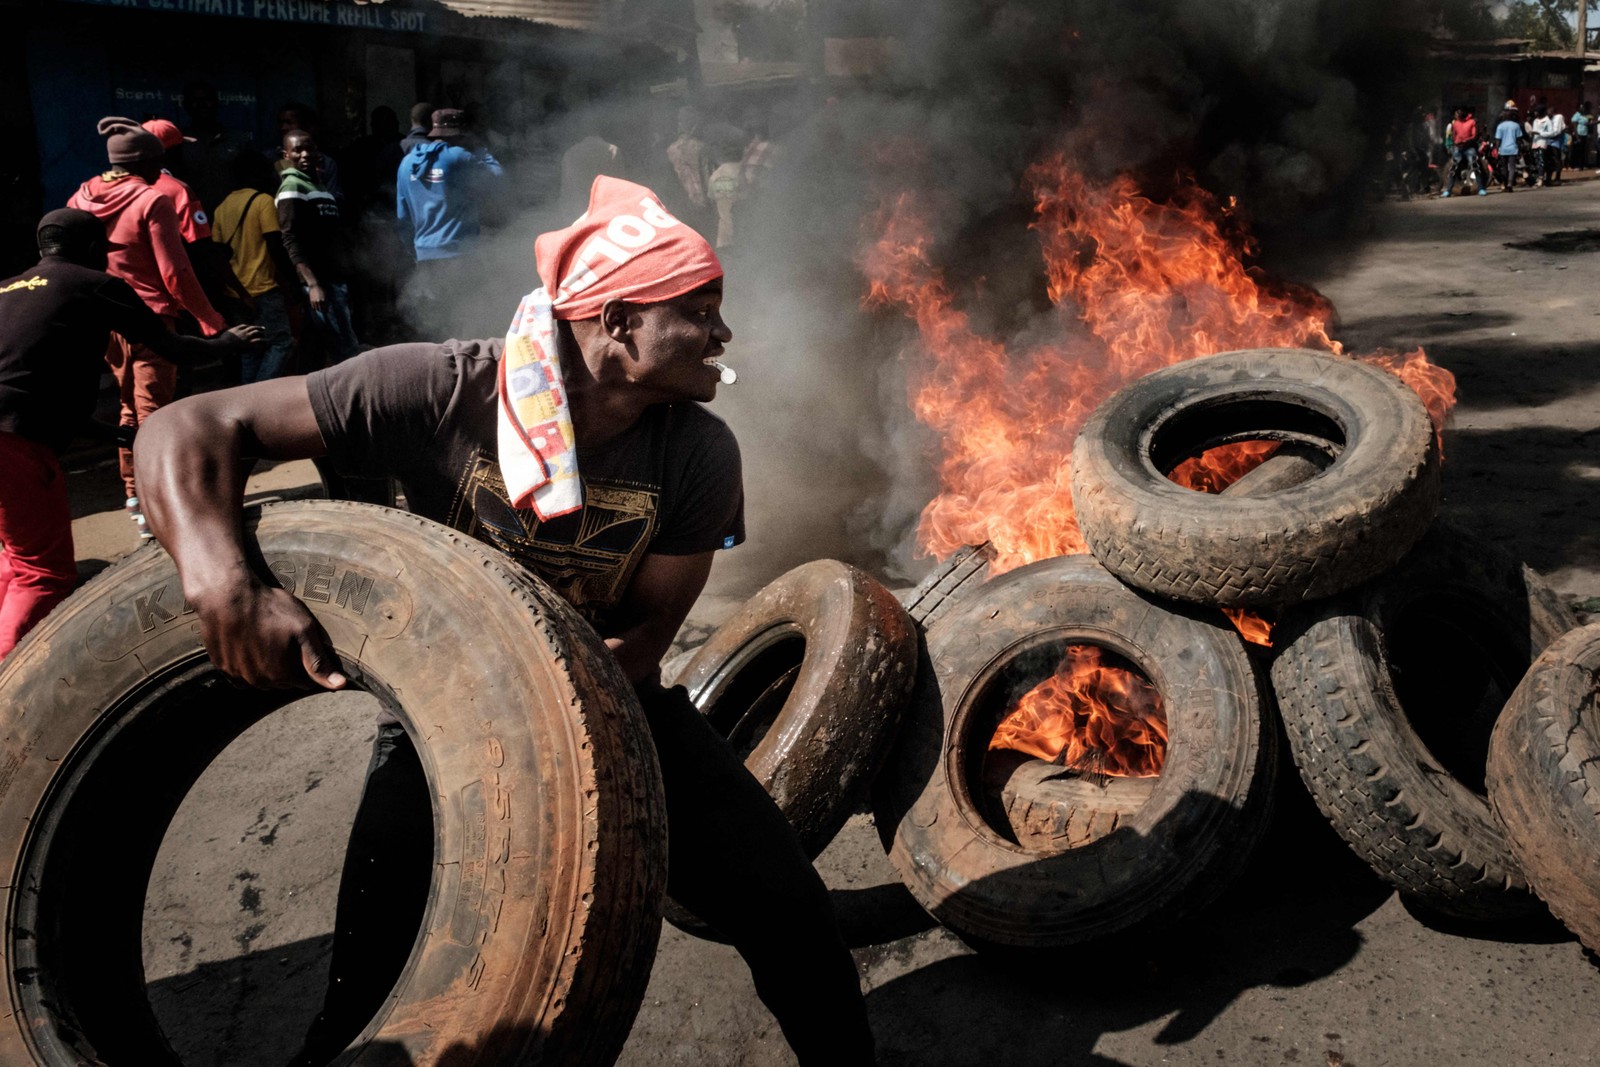 Manifestantes fazem barricada em chamas em Kibera, Nairóbi, em protesto contra crise política e econômica que assola o país — Foto: YASUYOSHI CHIBA